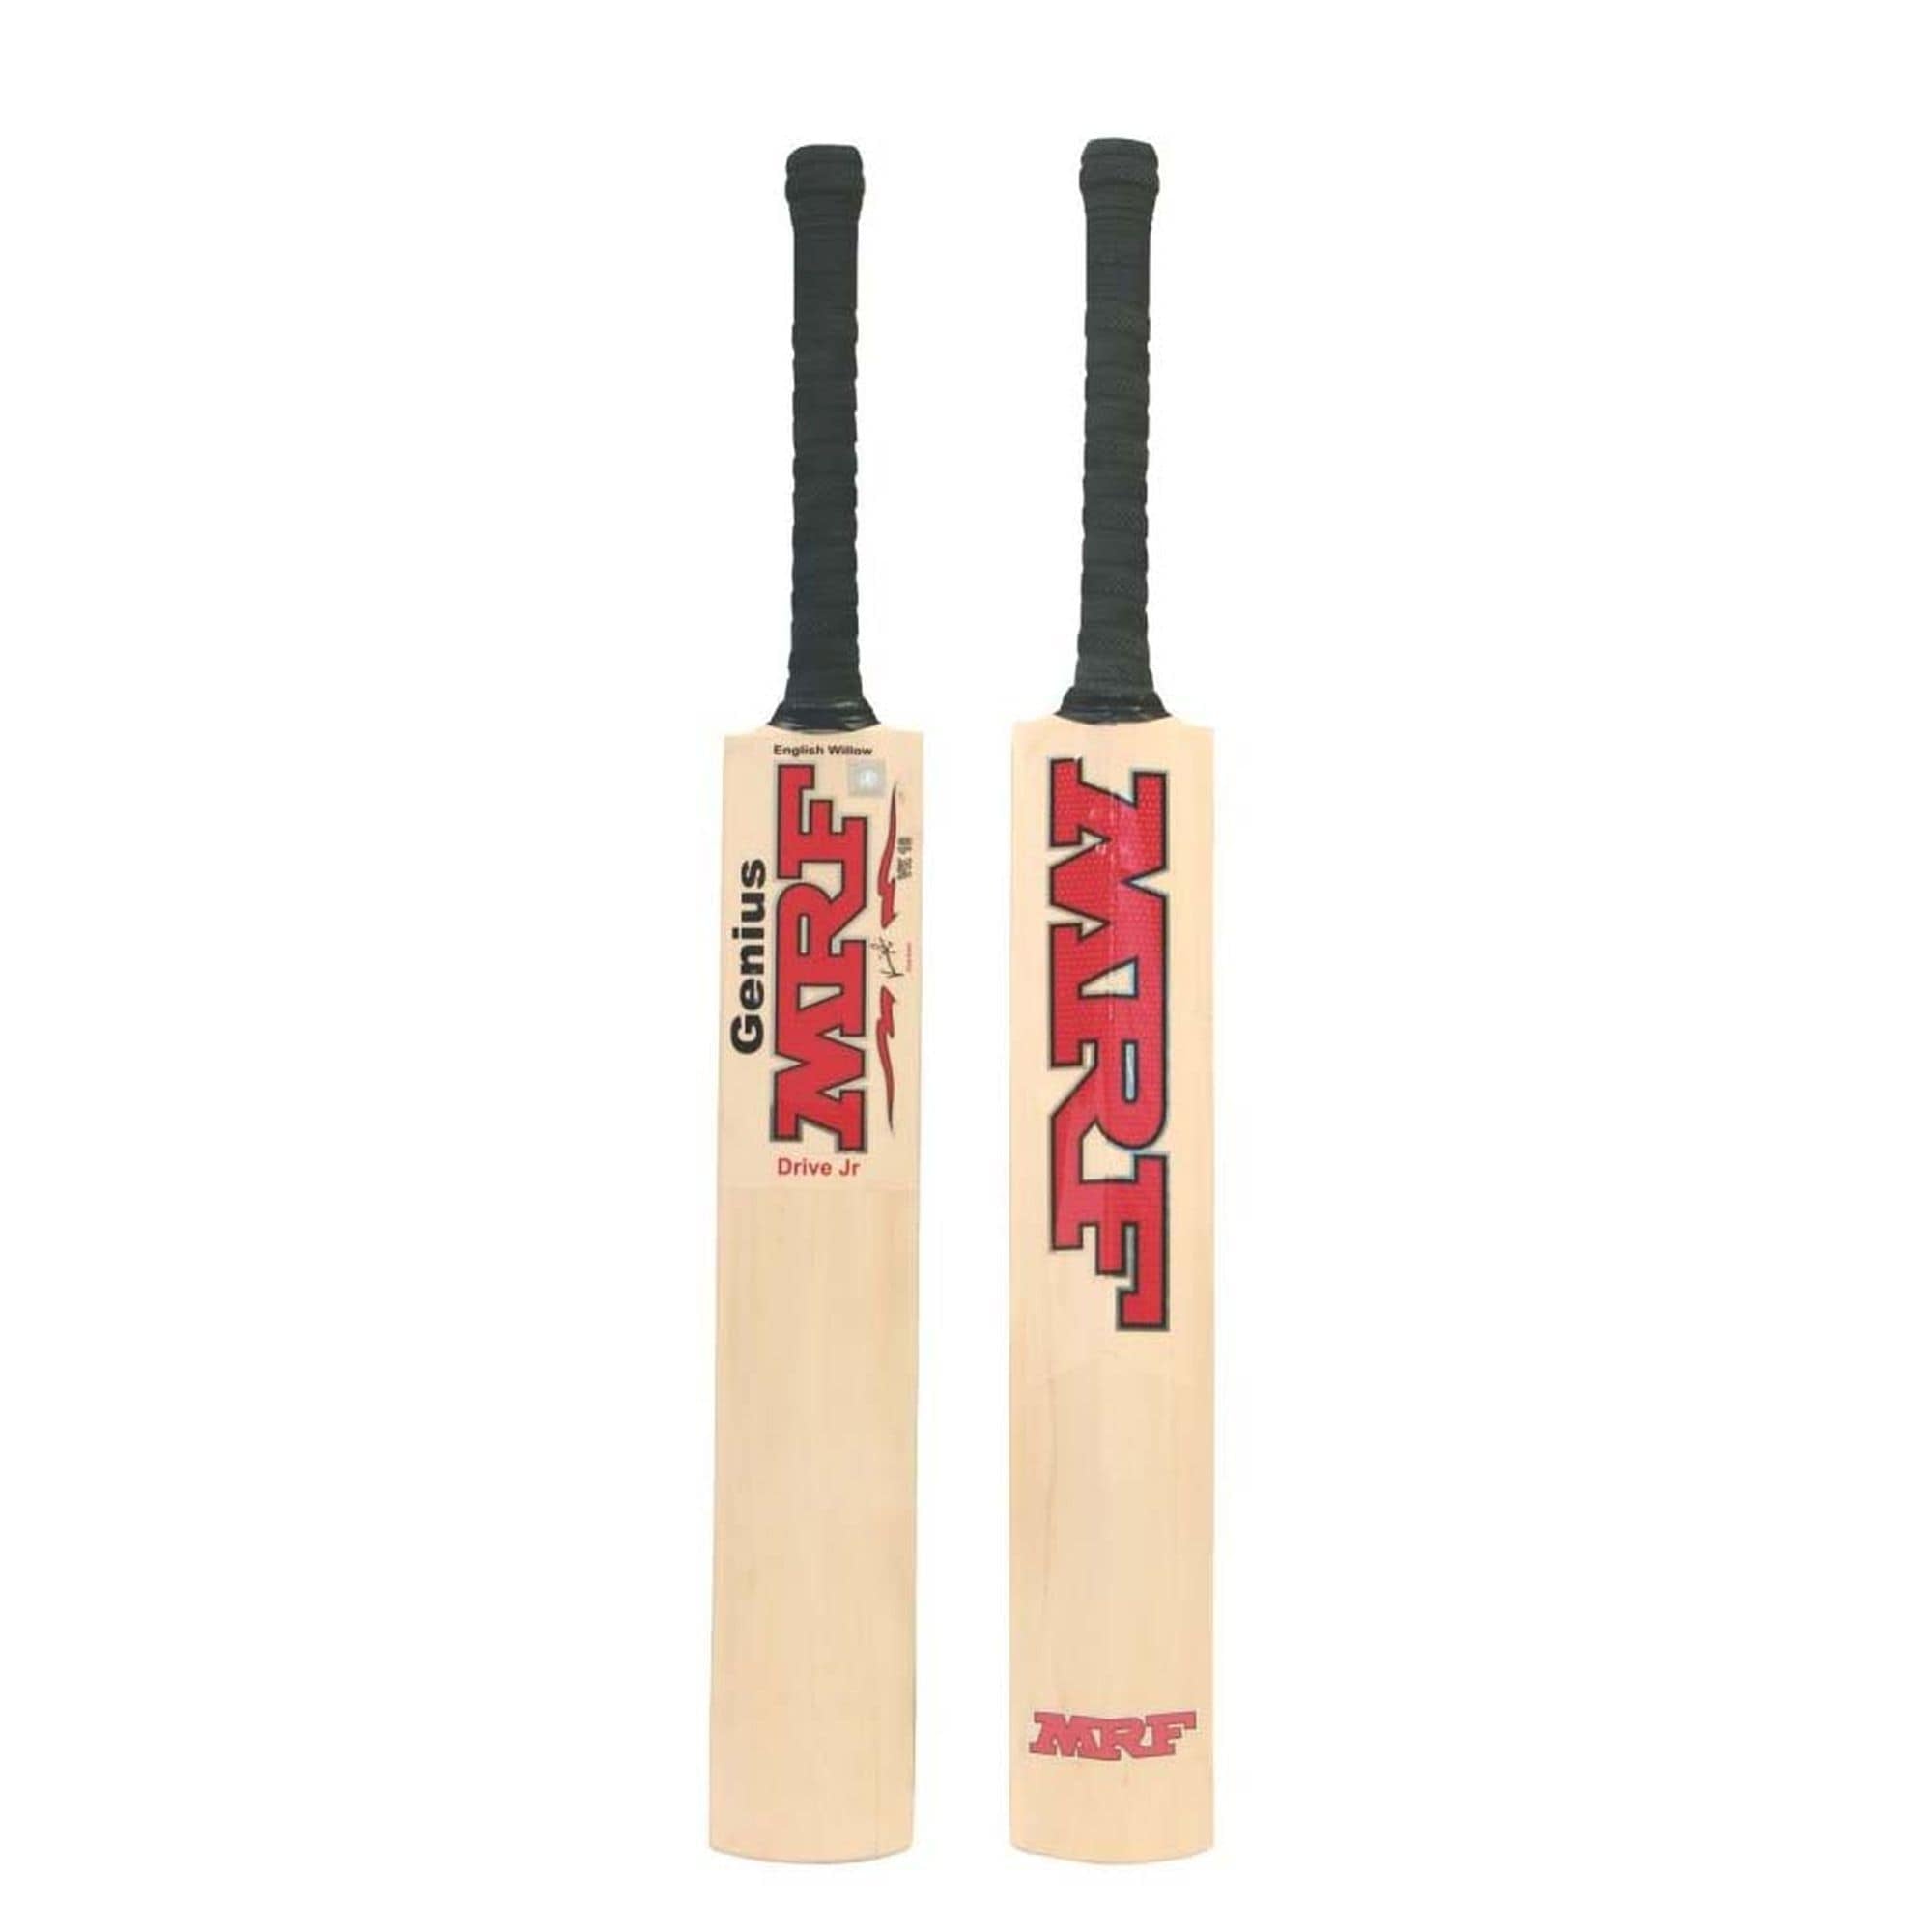 MRF Cricket Bats 6 MRF Drive Cricket Bat Junior